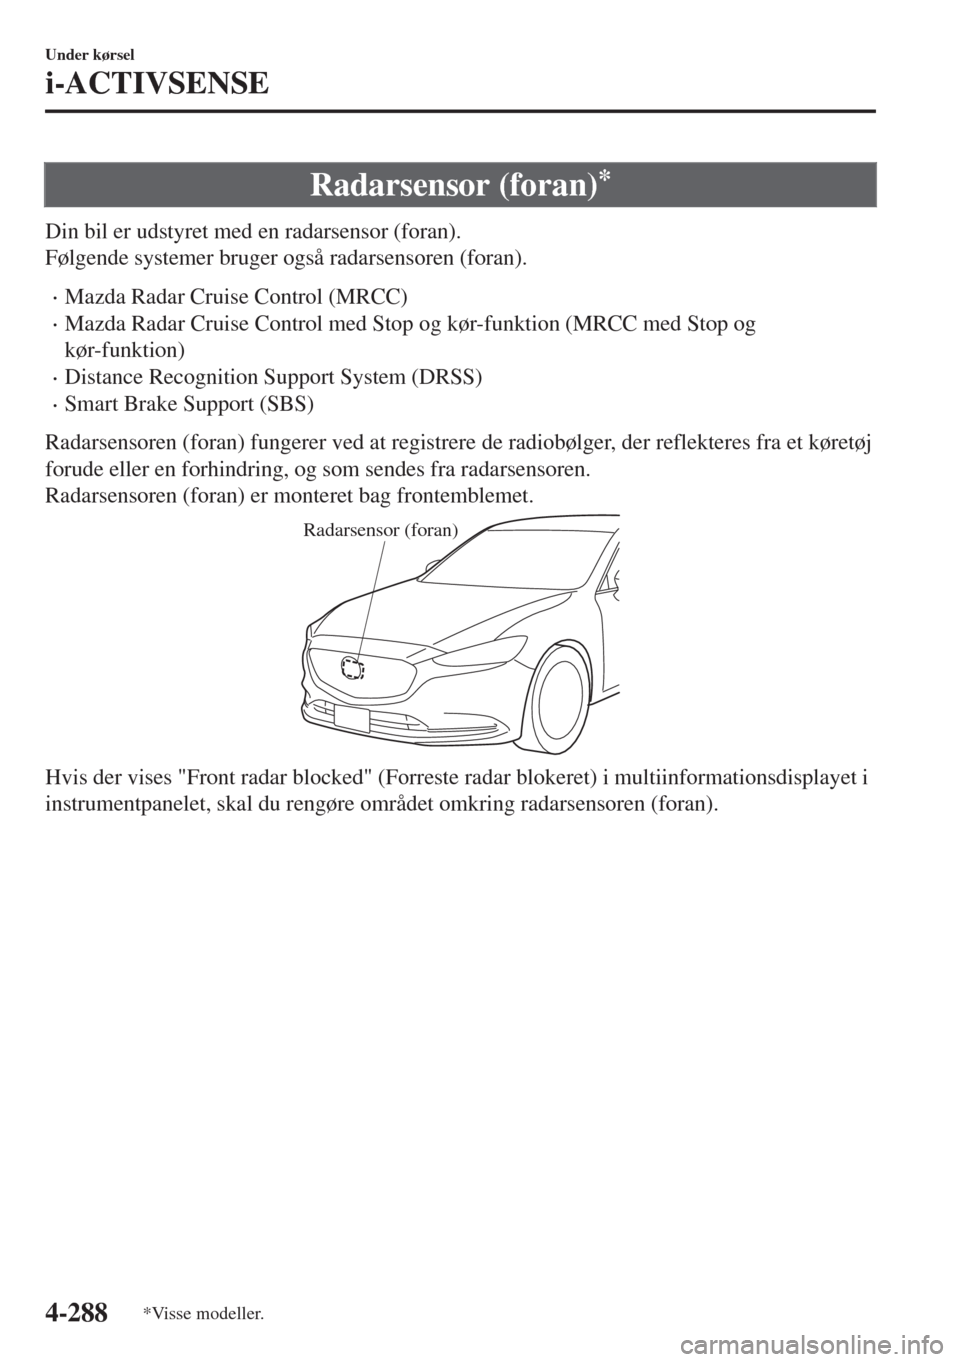 MAZDA MODEL 6 2018  Instruktionsbog (in Danish) Radarsensor (foran)*
Din bil er udstyret med en radarsensor (foran).
Følgende systemer bruger også radarsensoren (foran).
•Mazda Radar Cruise Control (MRCC)
•Mazda Radar Cruise Control med Stop 